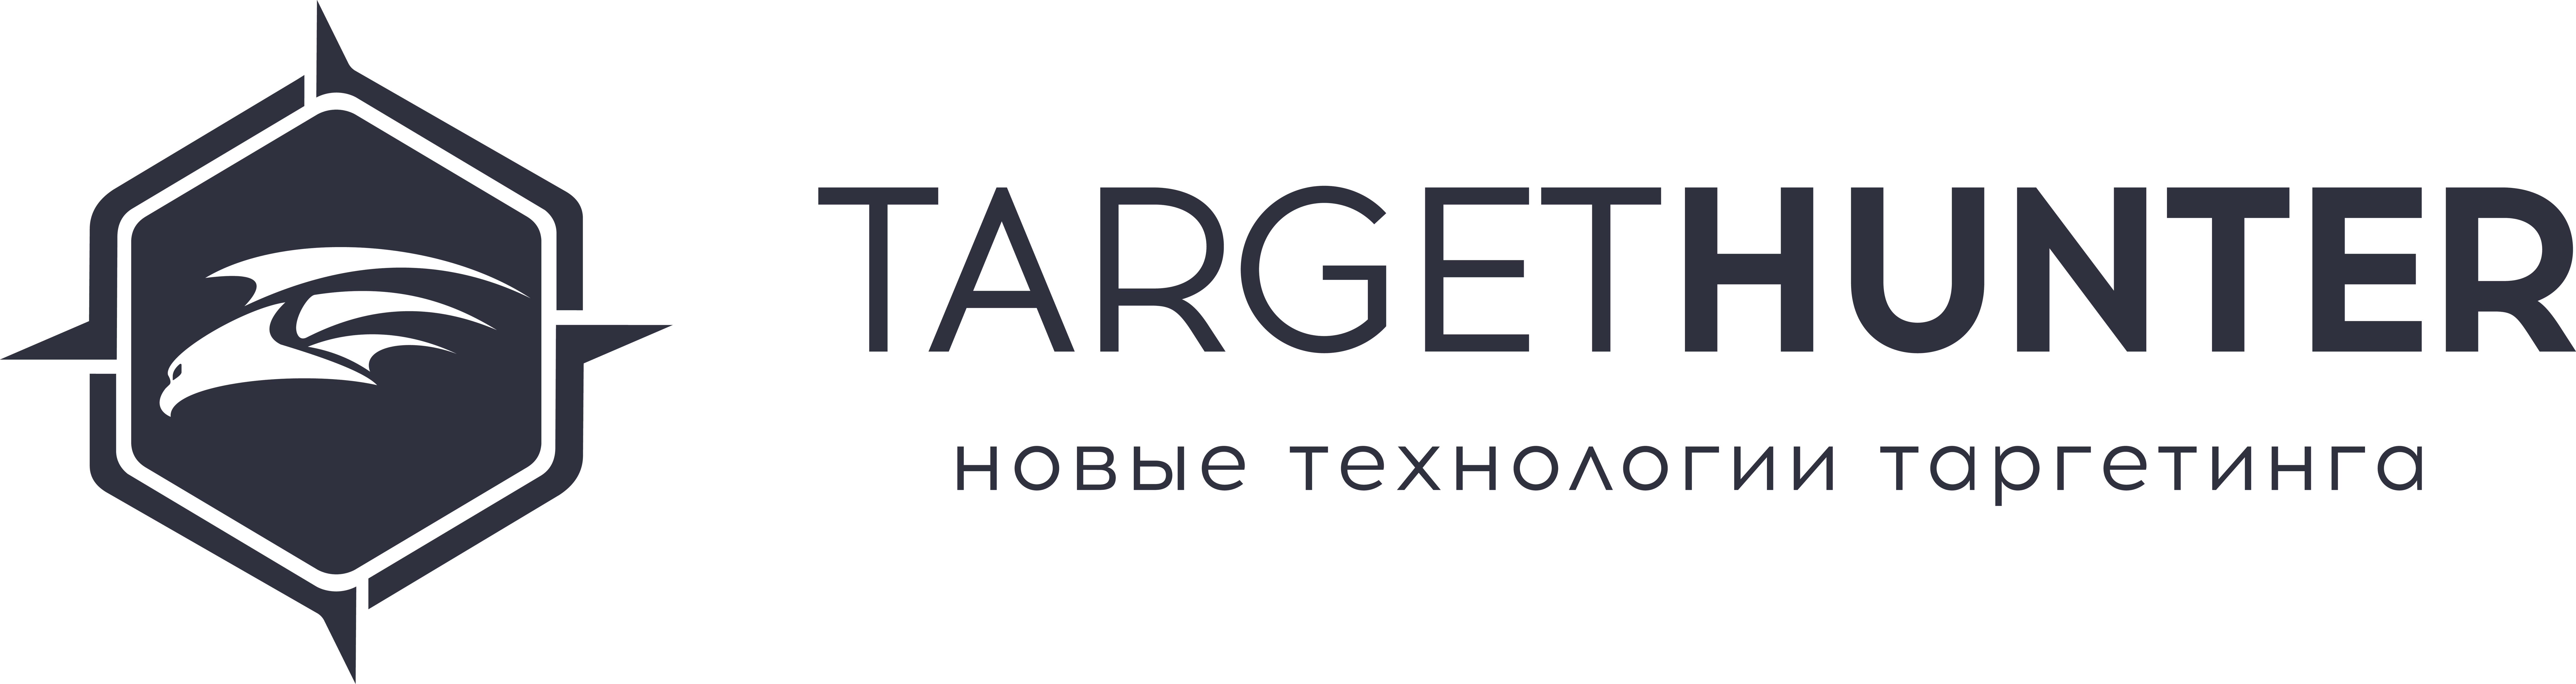 TargetHunter logo